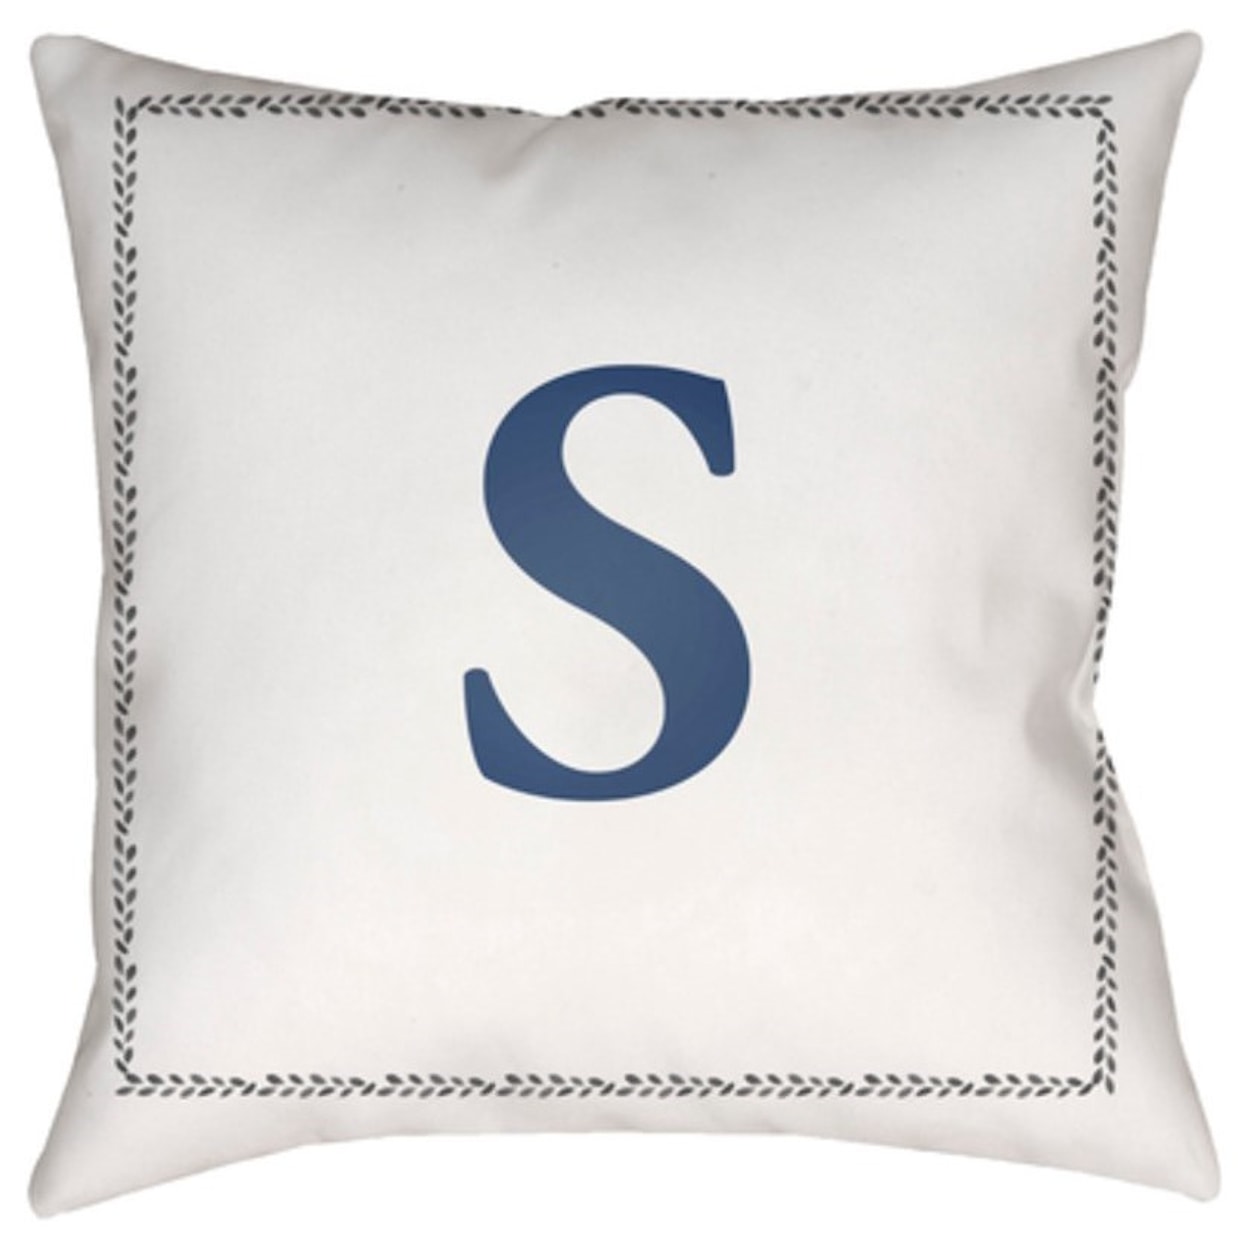 Surya Rugs Initials Pillow